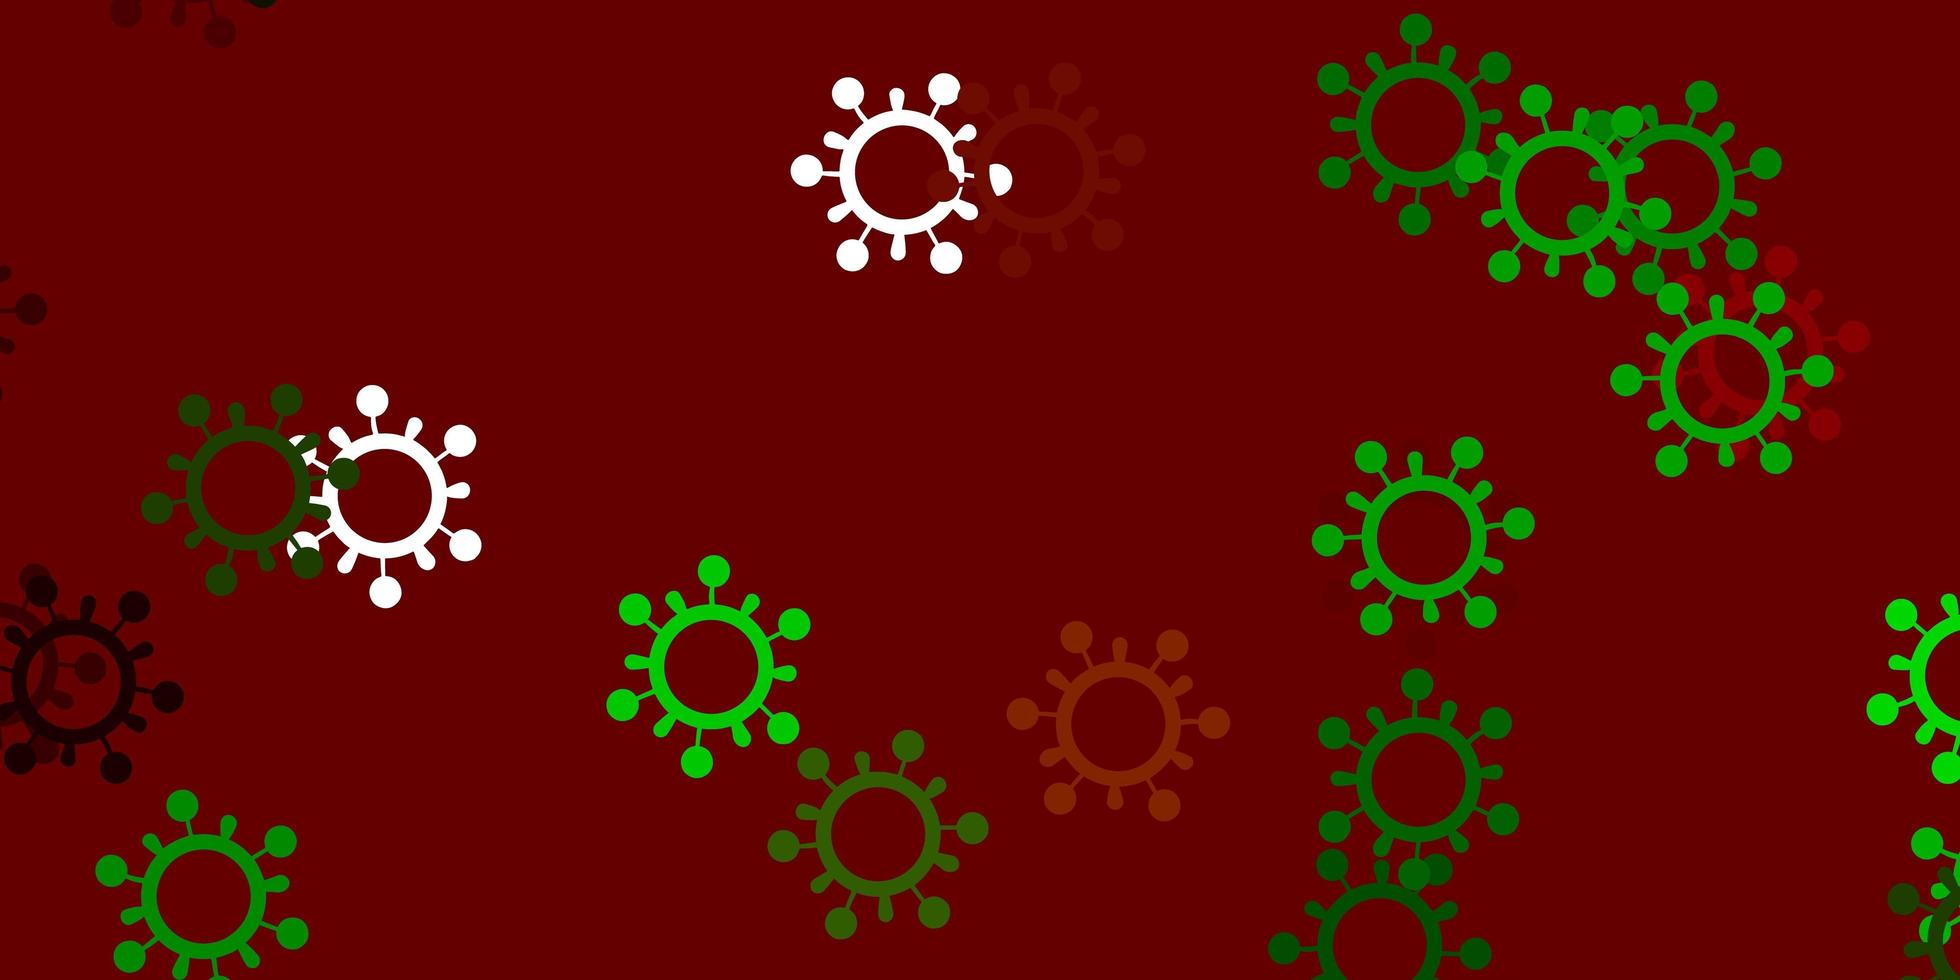 trama vettoriale verde chiaro, rosso con simboli di malattia.